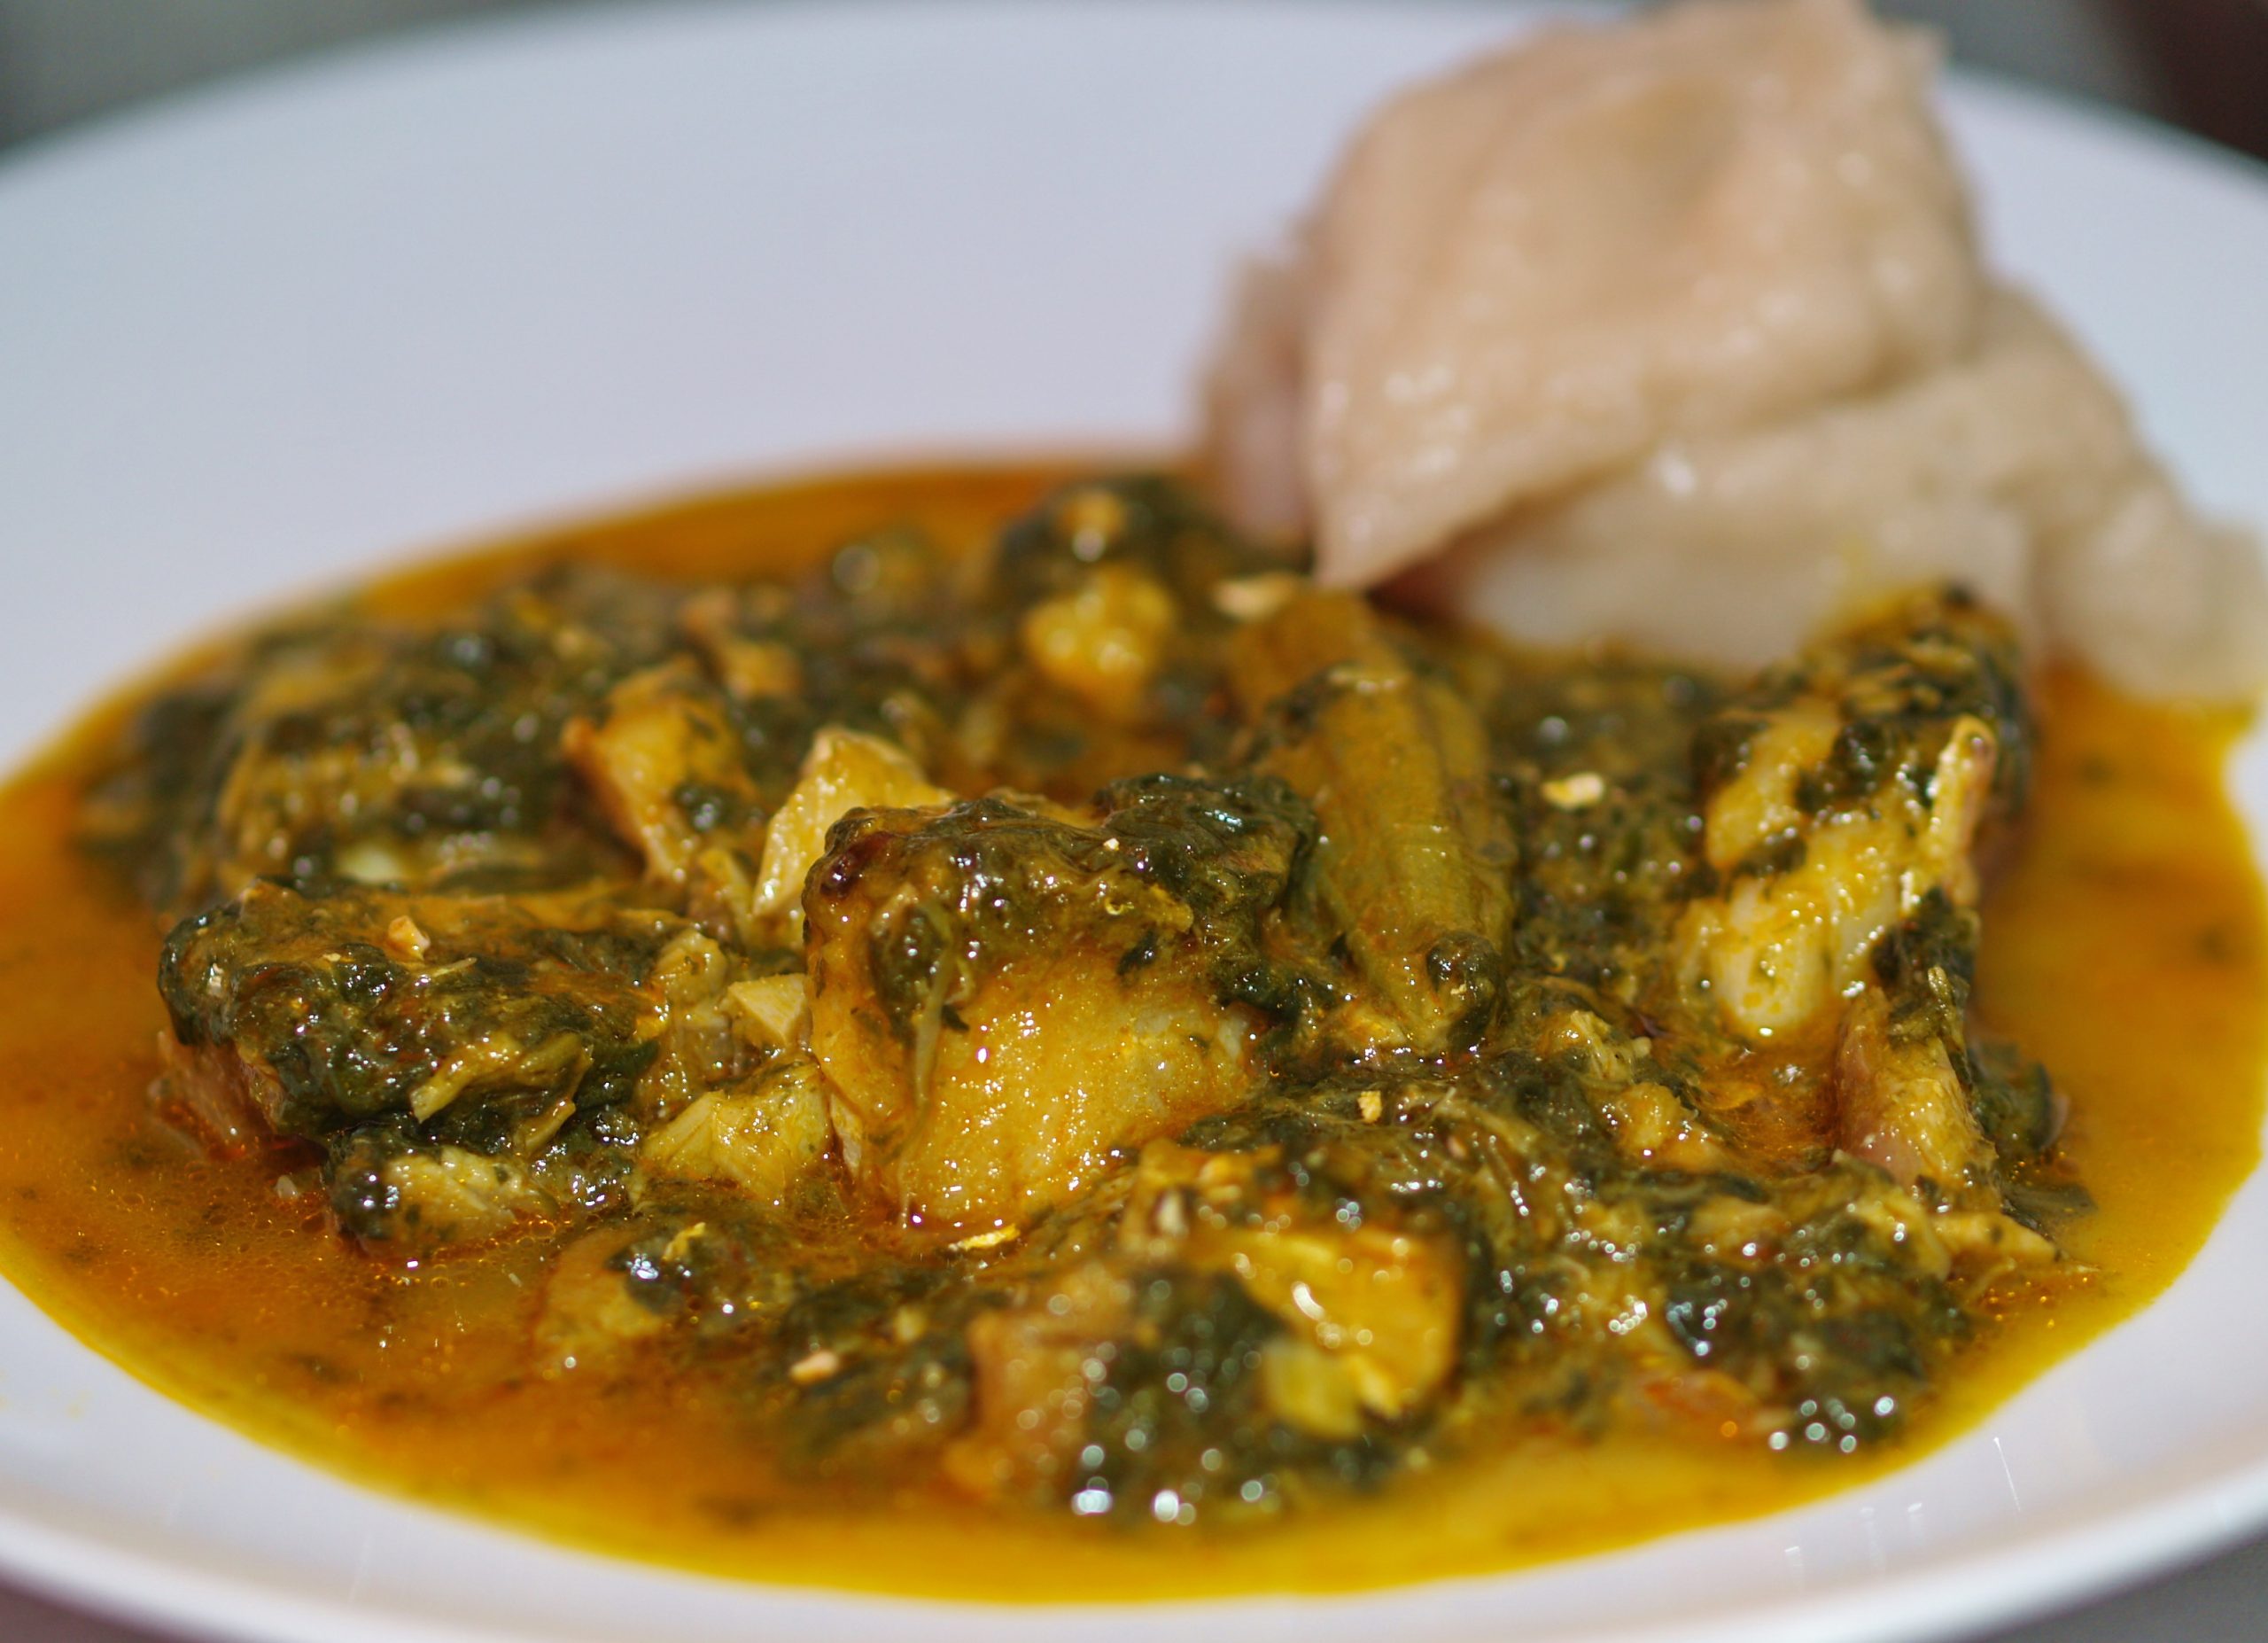 Calulu De Peixe: Fish & Vegetable Stew Recipe